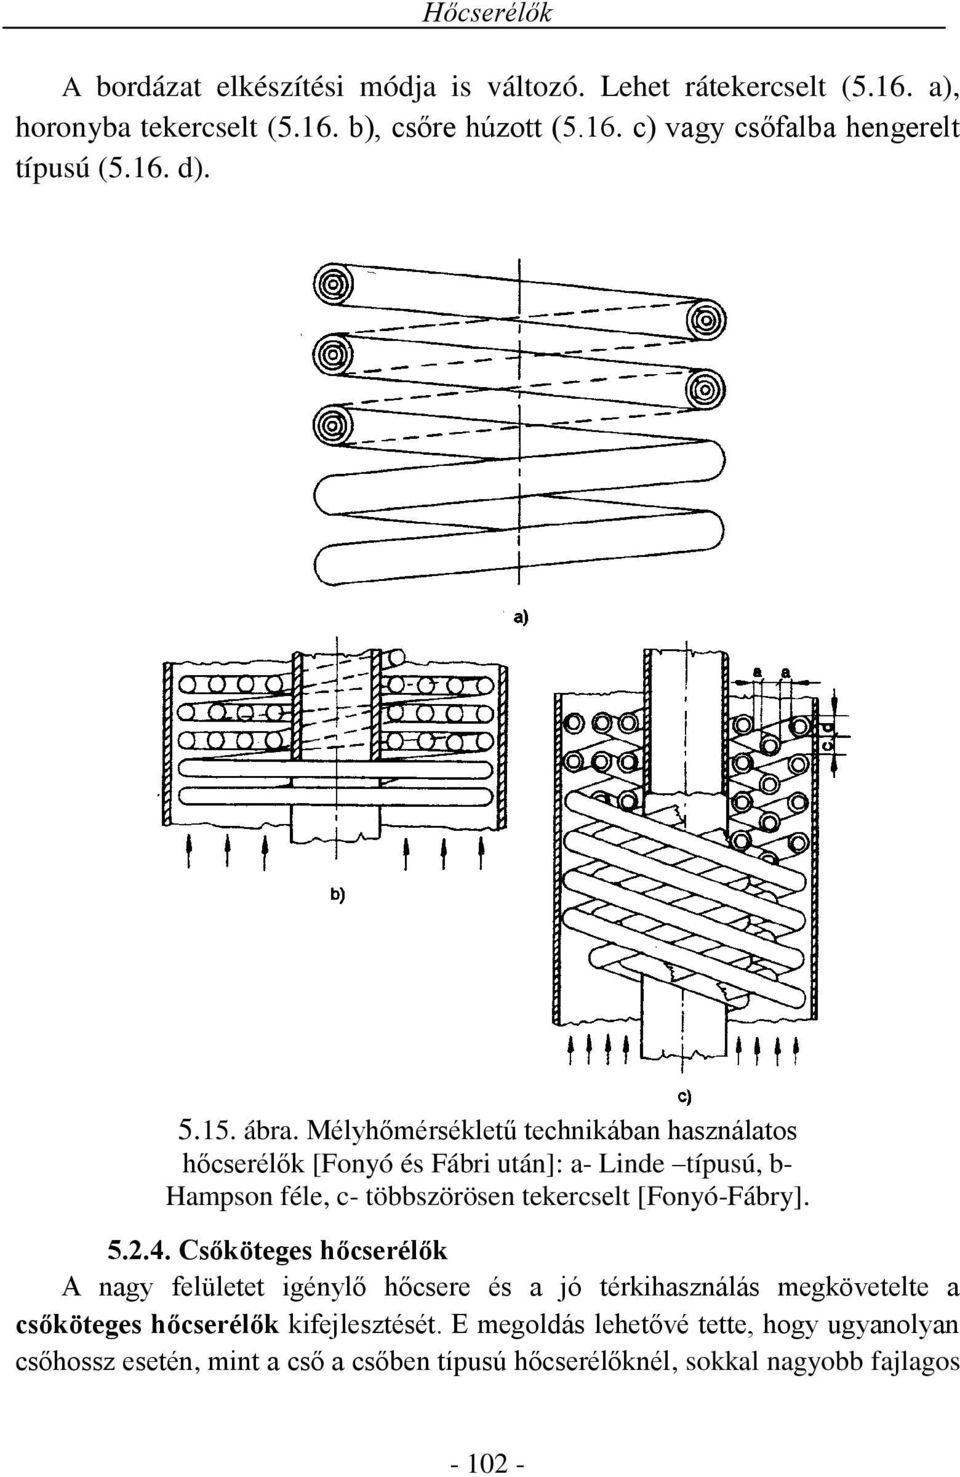 Mélyhőmérsékletű technikában használatos hőcserélők [Fonyó és Fábri után]: a- Linde típusú, b- Hampson féle, c- többszörösen tekercselt [Fonyó-Fábry]. 5.